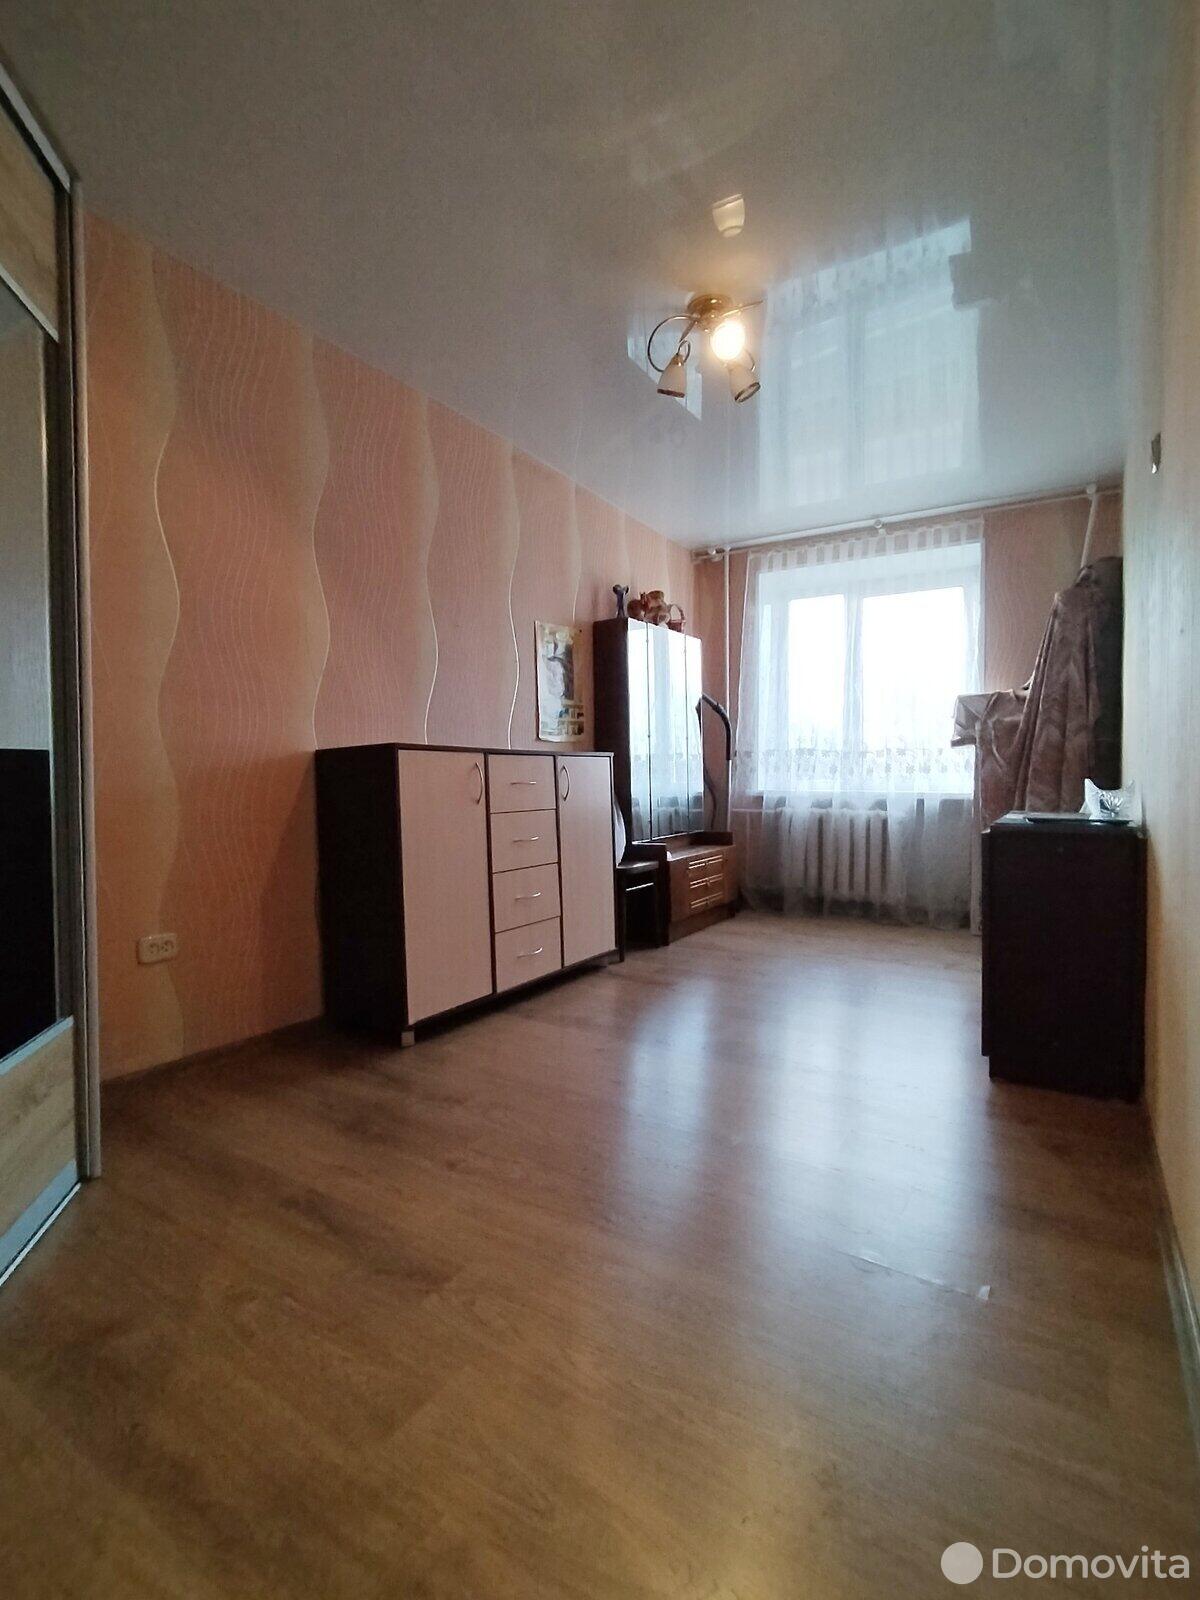 Цена продажи квартиры, Борисов, ул. Гагарина, д. 87